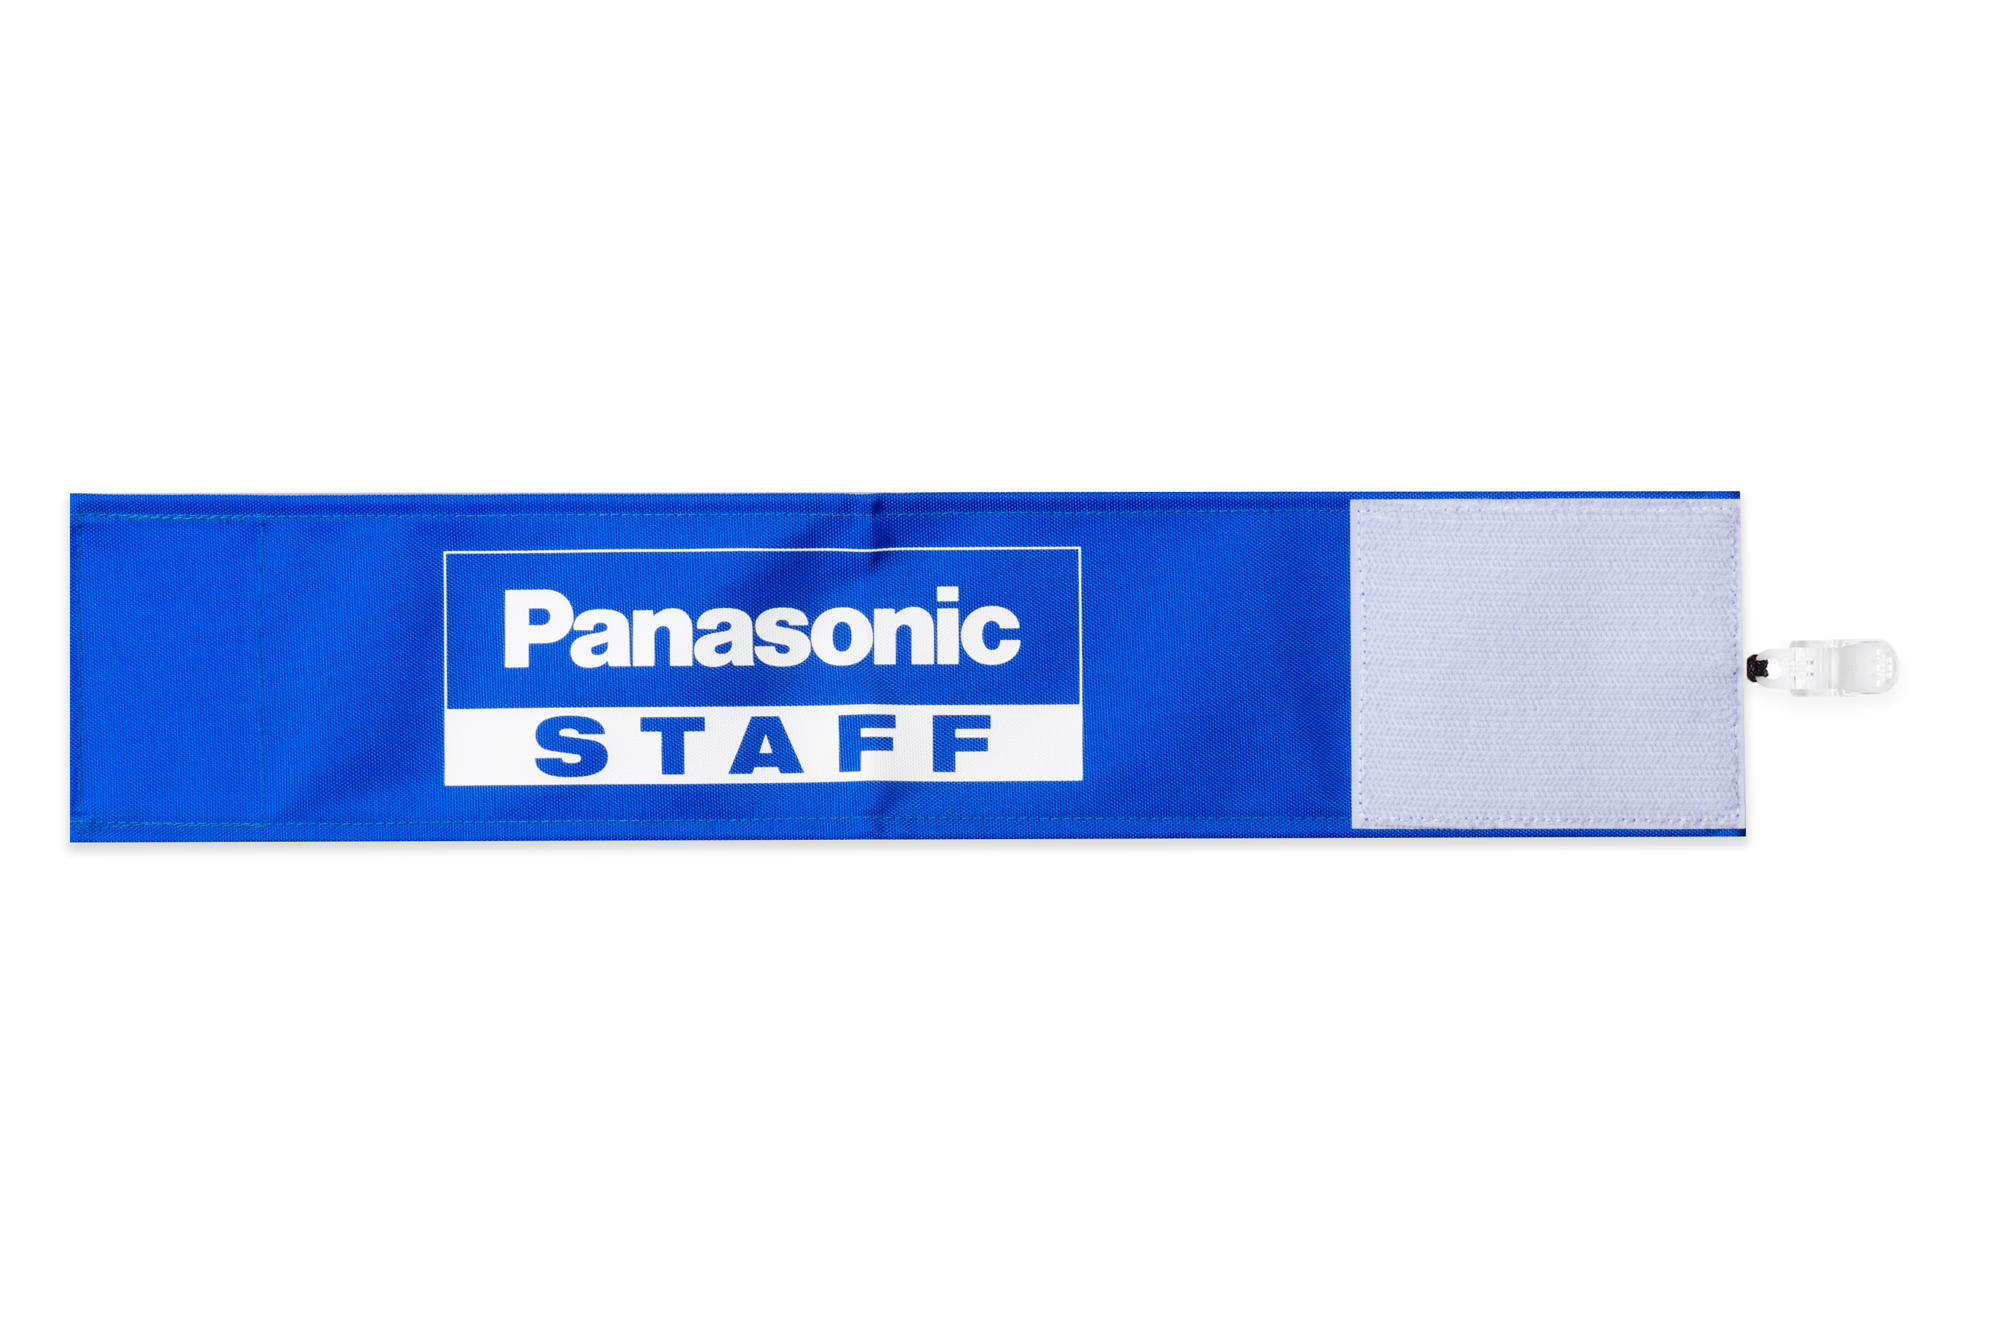 Panasonic STAFF